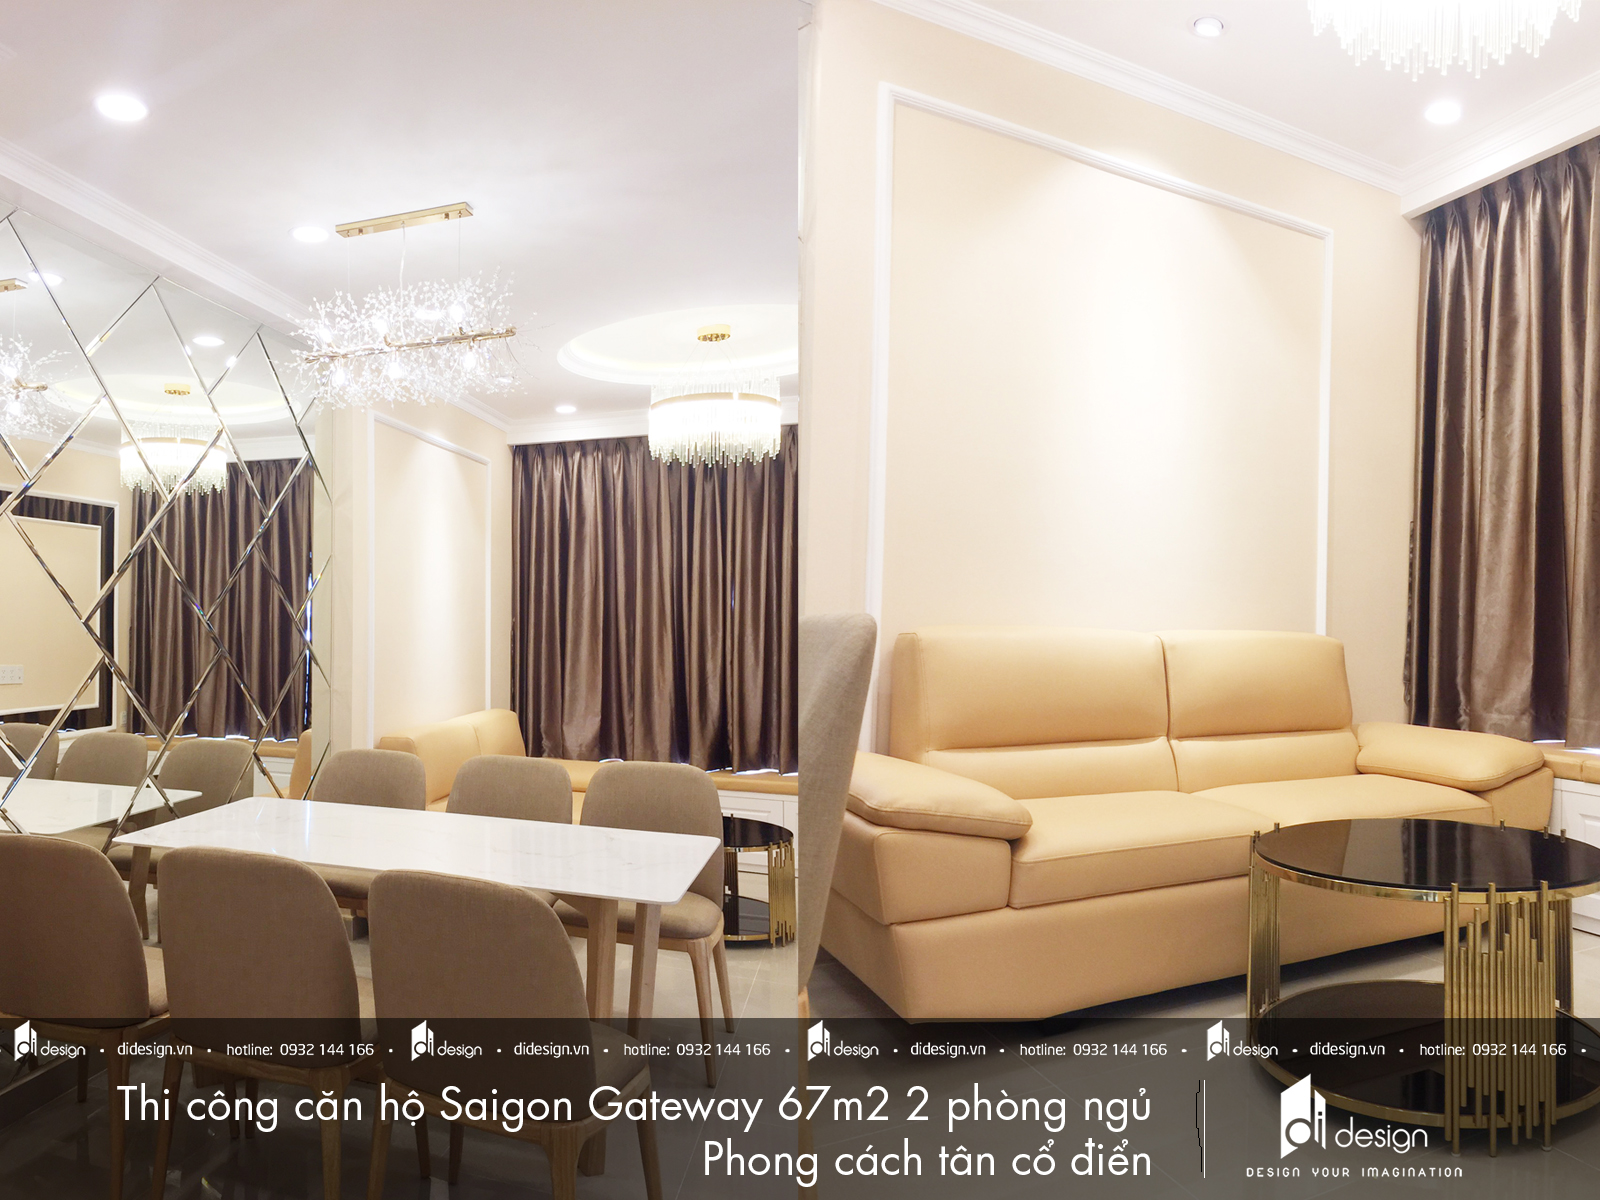 Thi công nội thất căn hộ Saigon Gateway 67m2 phong cách tân cổ điển